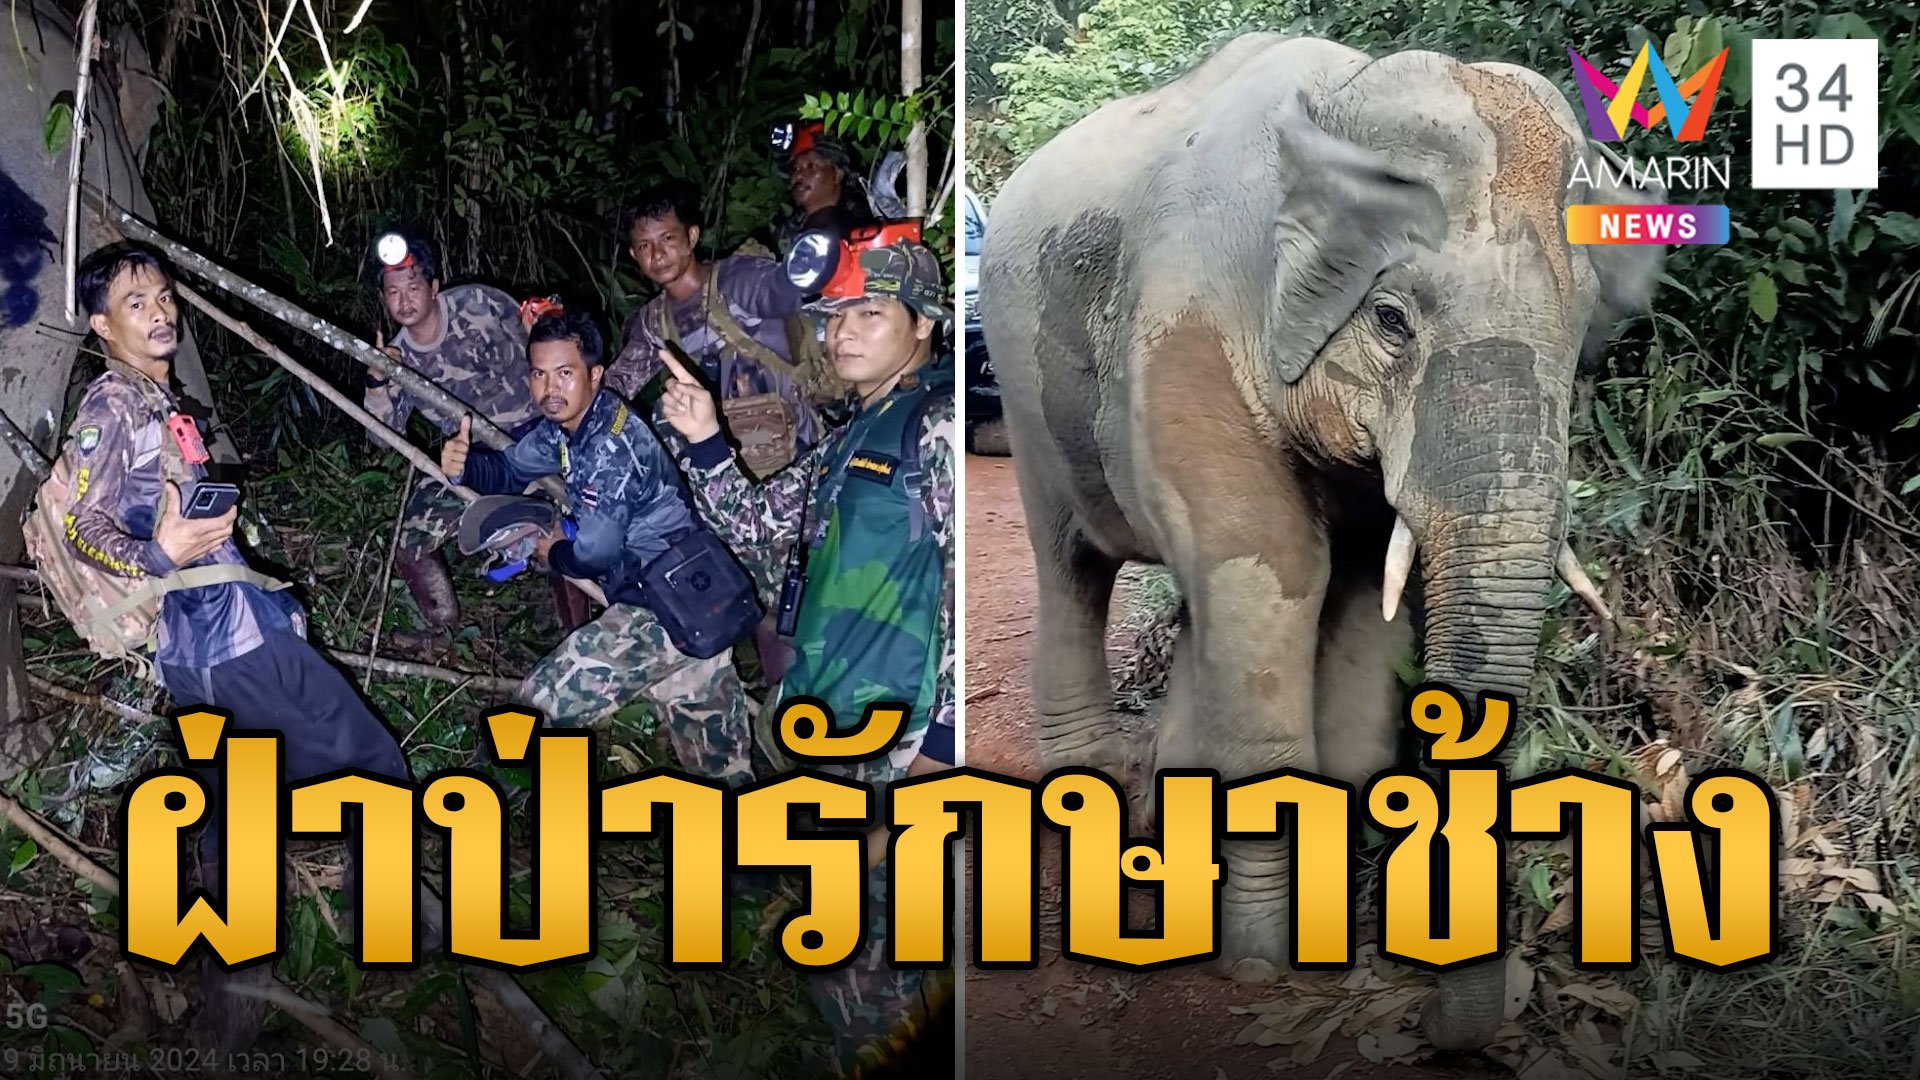 เจ้าหน้าที่ฝ่าป่า รักษา 3 ช้างบาดเจ็บ | ข่าวอรุณอมรินทร์ | 21 มิ.ย. 67 | AMARIN TVHD34